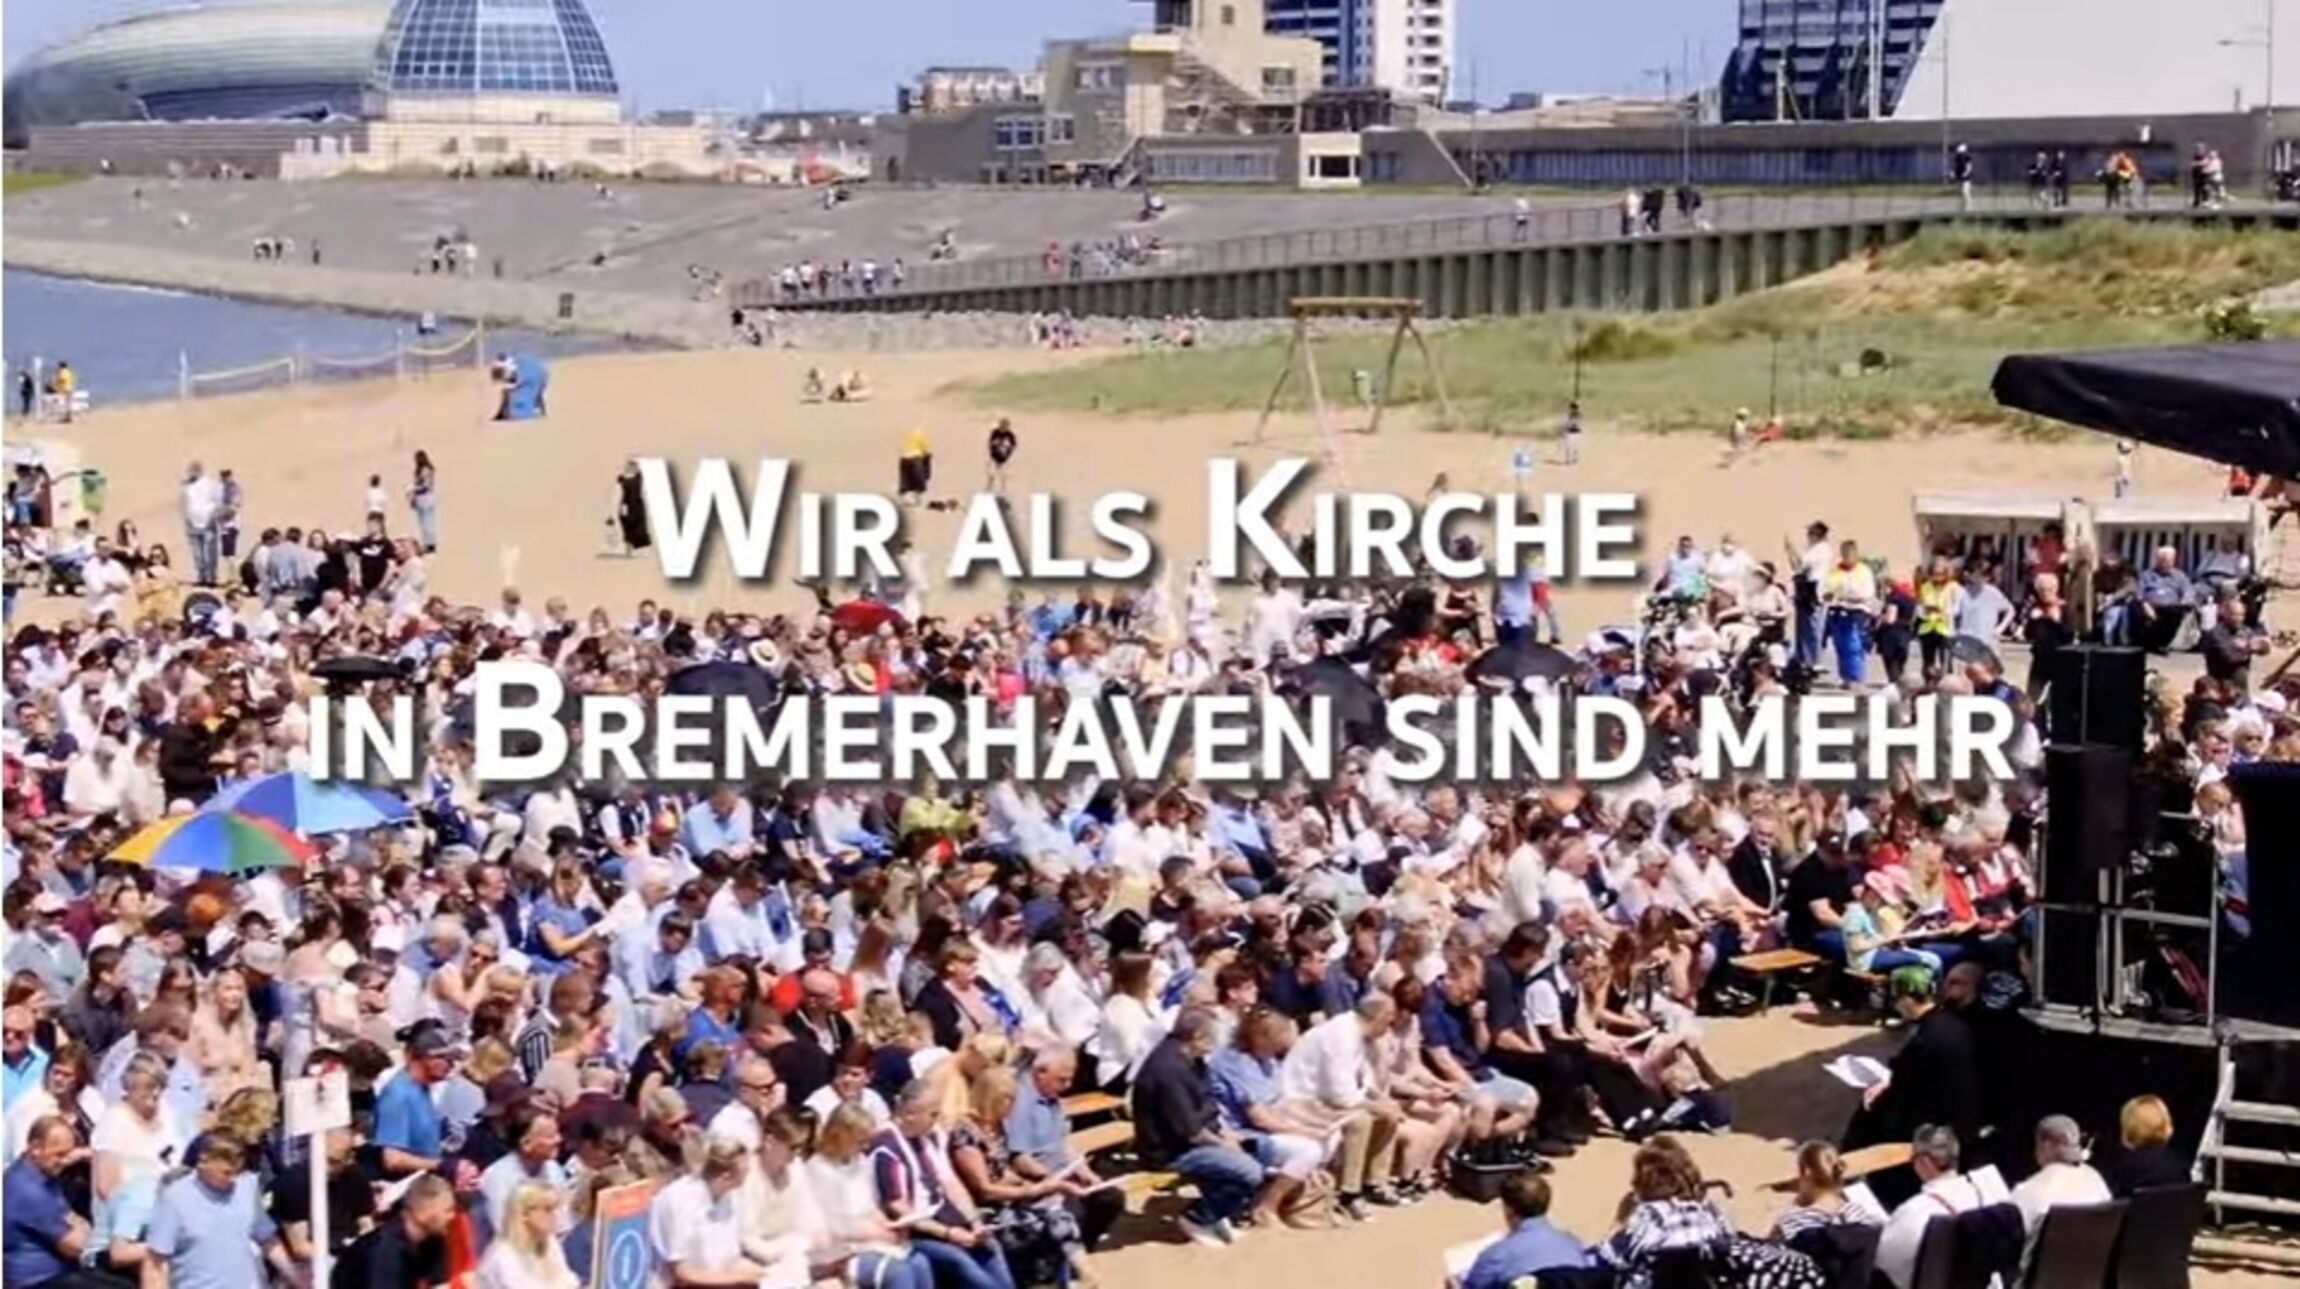 "Wir als Kirche in Bremerhaven sind mehr..."